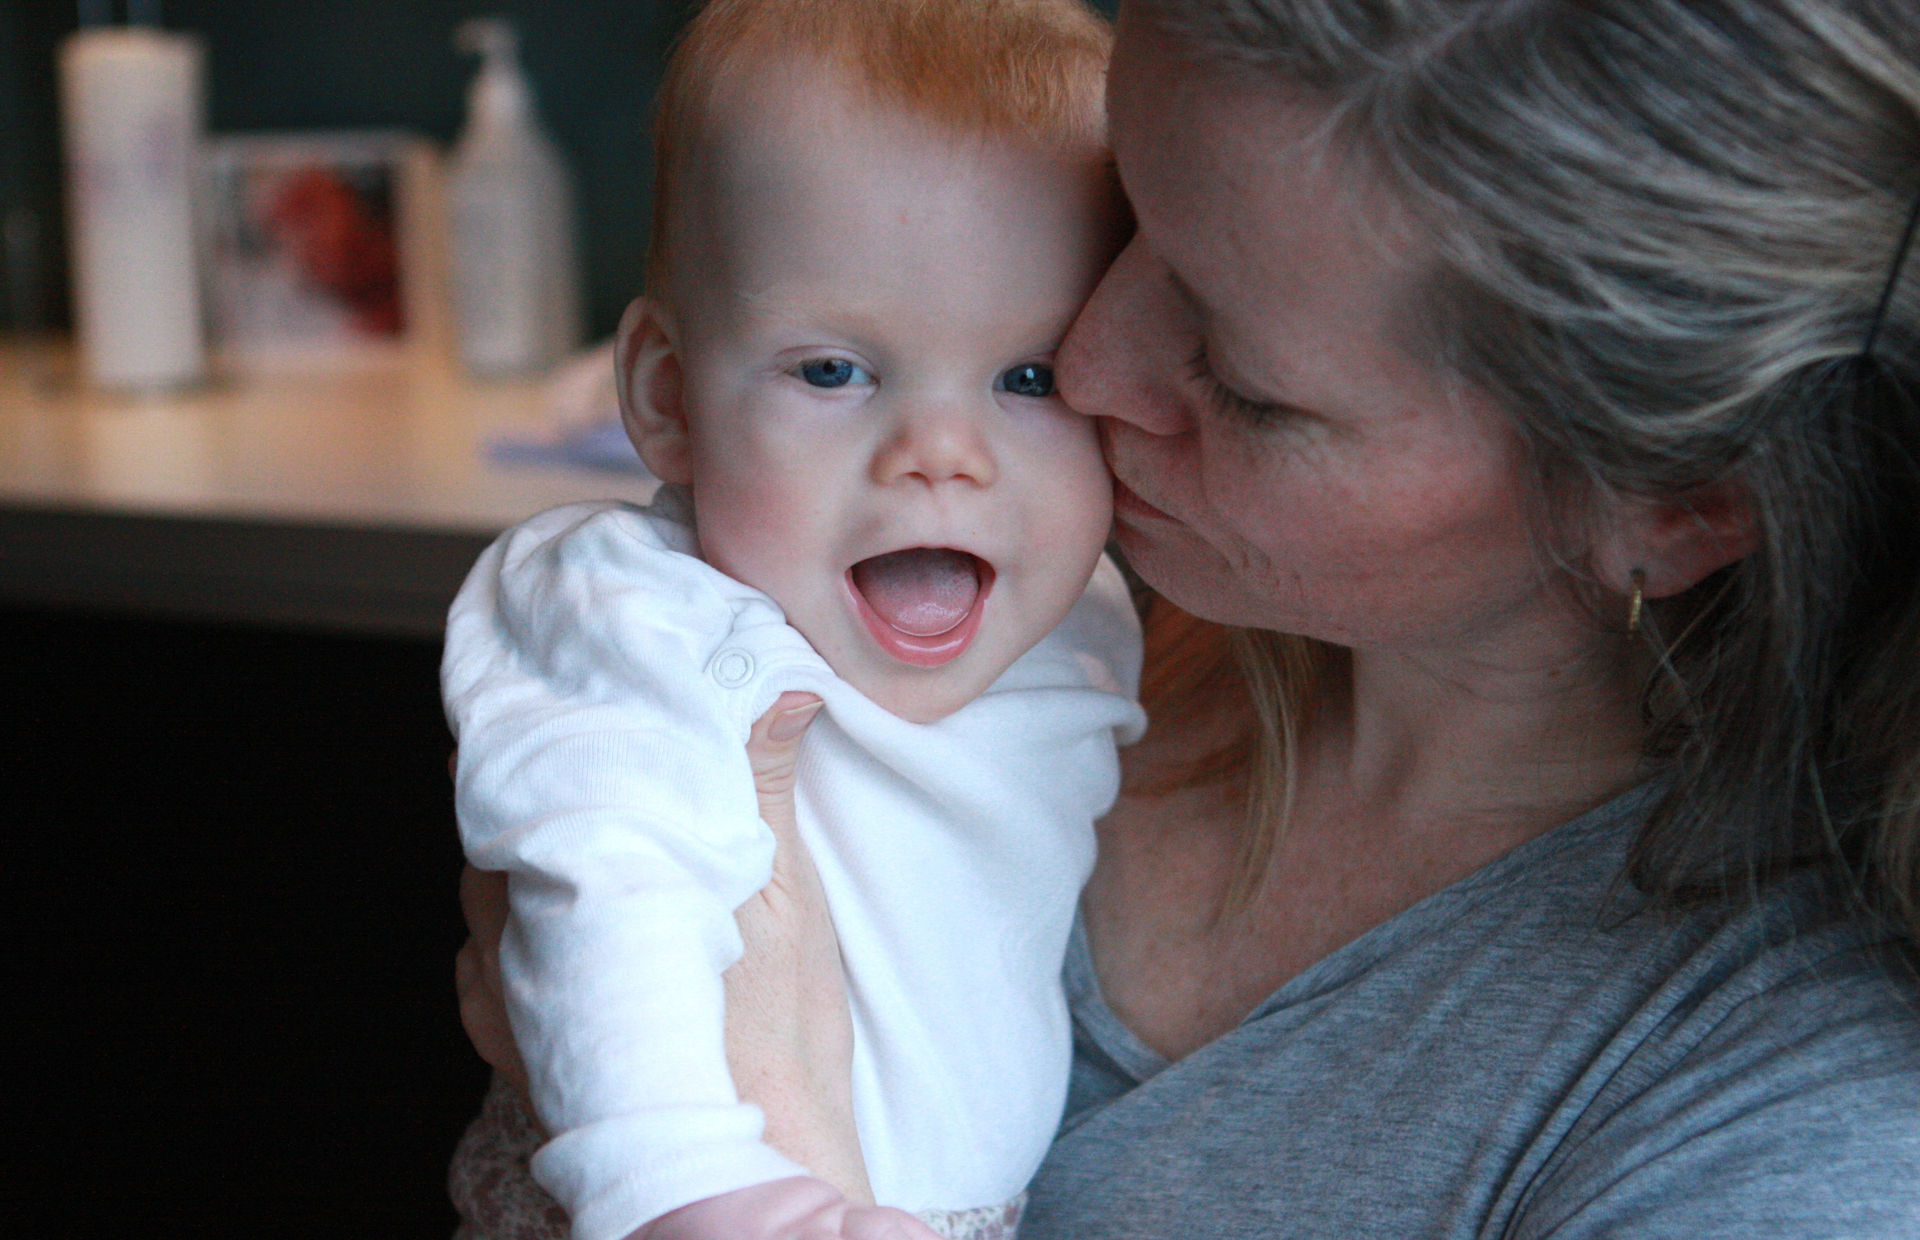 Lille Anne Mathea er født med Turner syndrom. Mamma Grete er takknemlig for at abort aldri var et alternativ for dem.